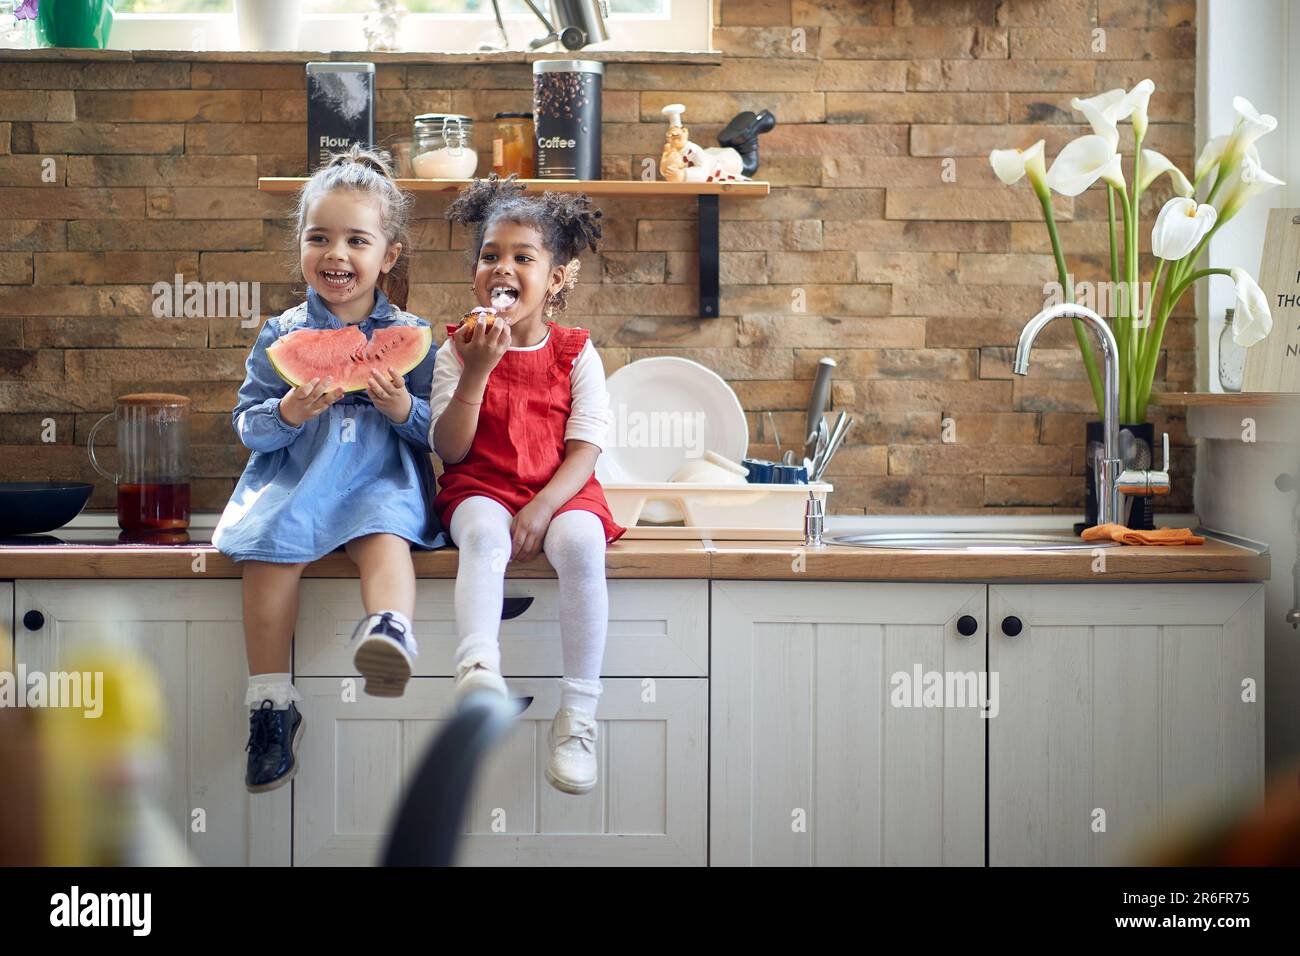 Zwei süße kleine Mädchen, die auf einer Kithcne-Arbeitsfläche sitzen und sich albern benehmen und einen gesunden Snack zusammen genießen. Zuhause, Familie, Lifestyle-Konzept. Stockfoto